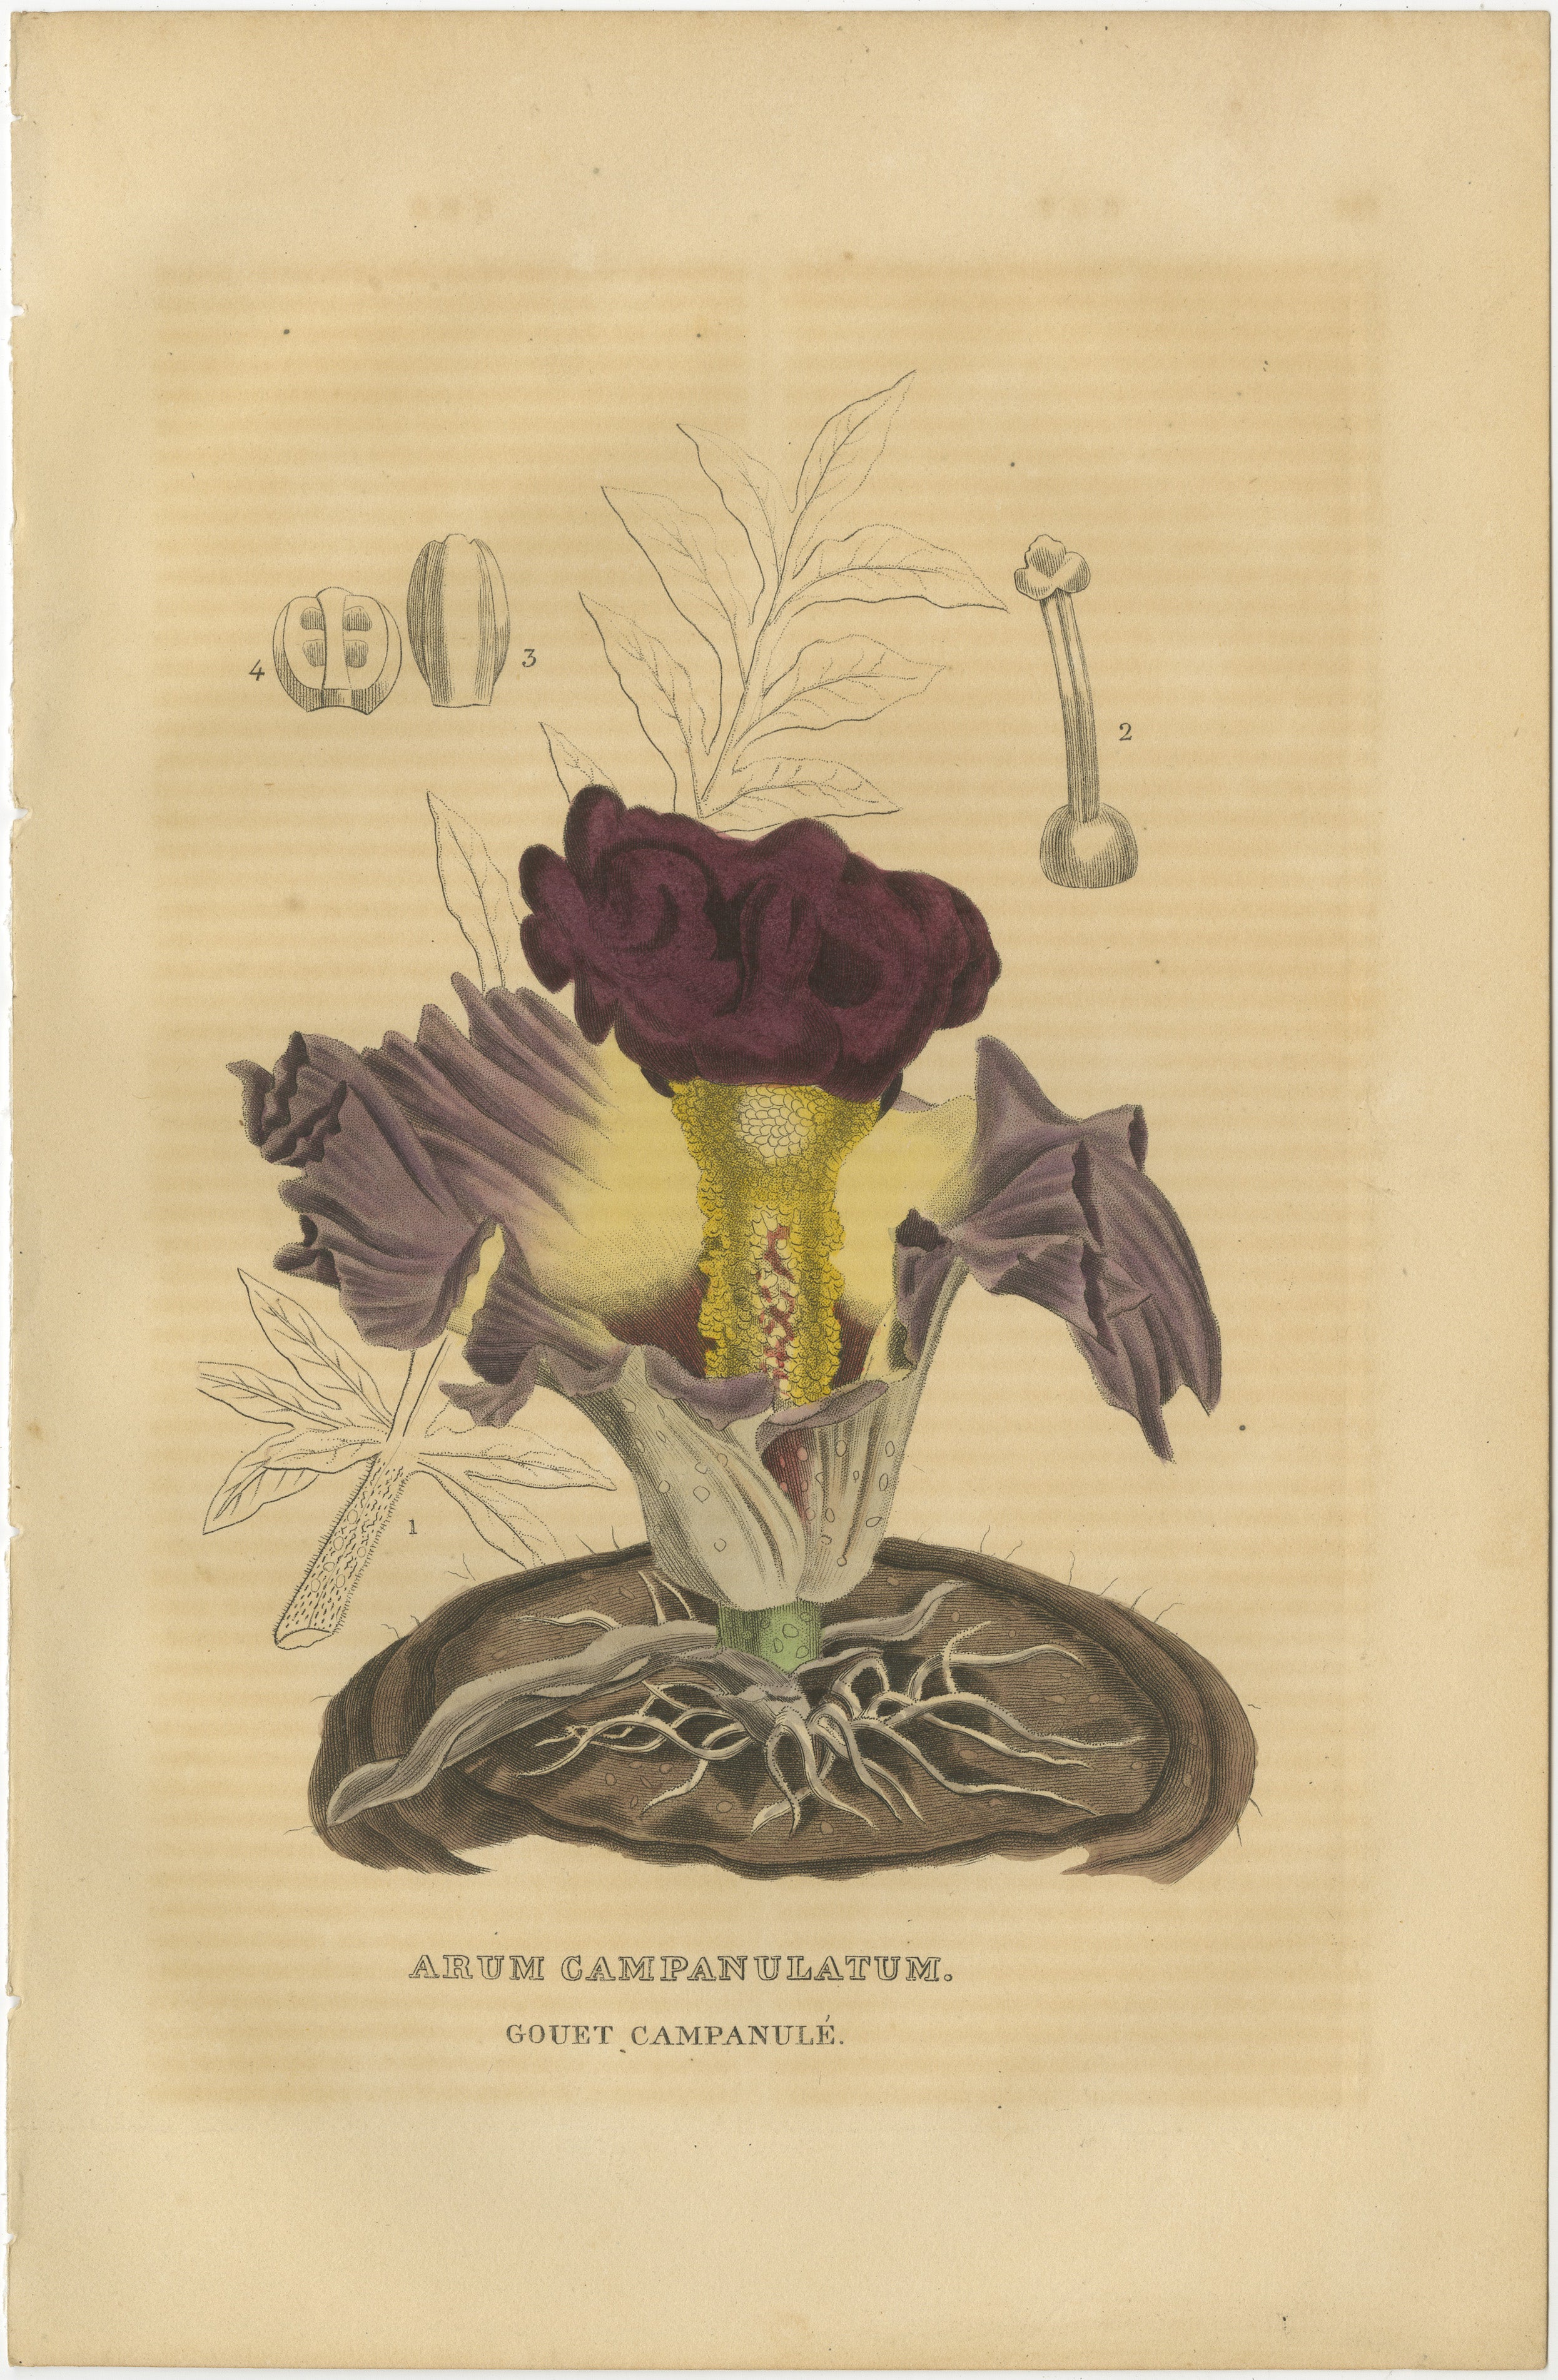 Dieser antike Originalstich zeigt den Arum Campanulatum, der auch als Glockenarum oder Campanula bekannt ist. Dieser Druck wurde vor über 200 Jahren handkoloriert.

Die Pflanze ist mit einer großen, farbenprächtigen burgunderroten Blüte abgebildet,